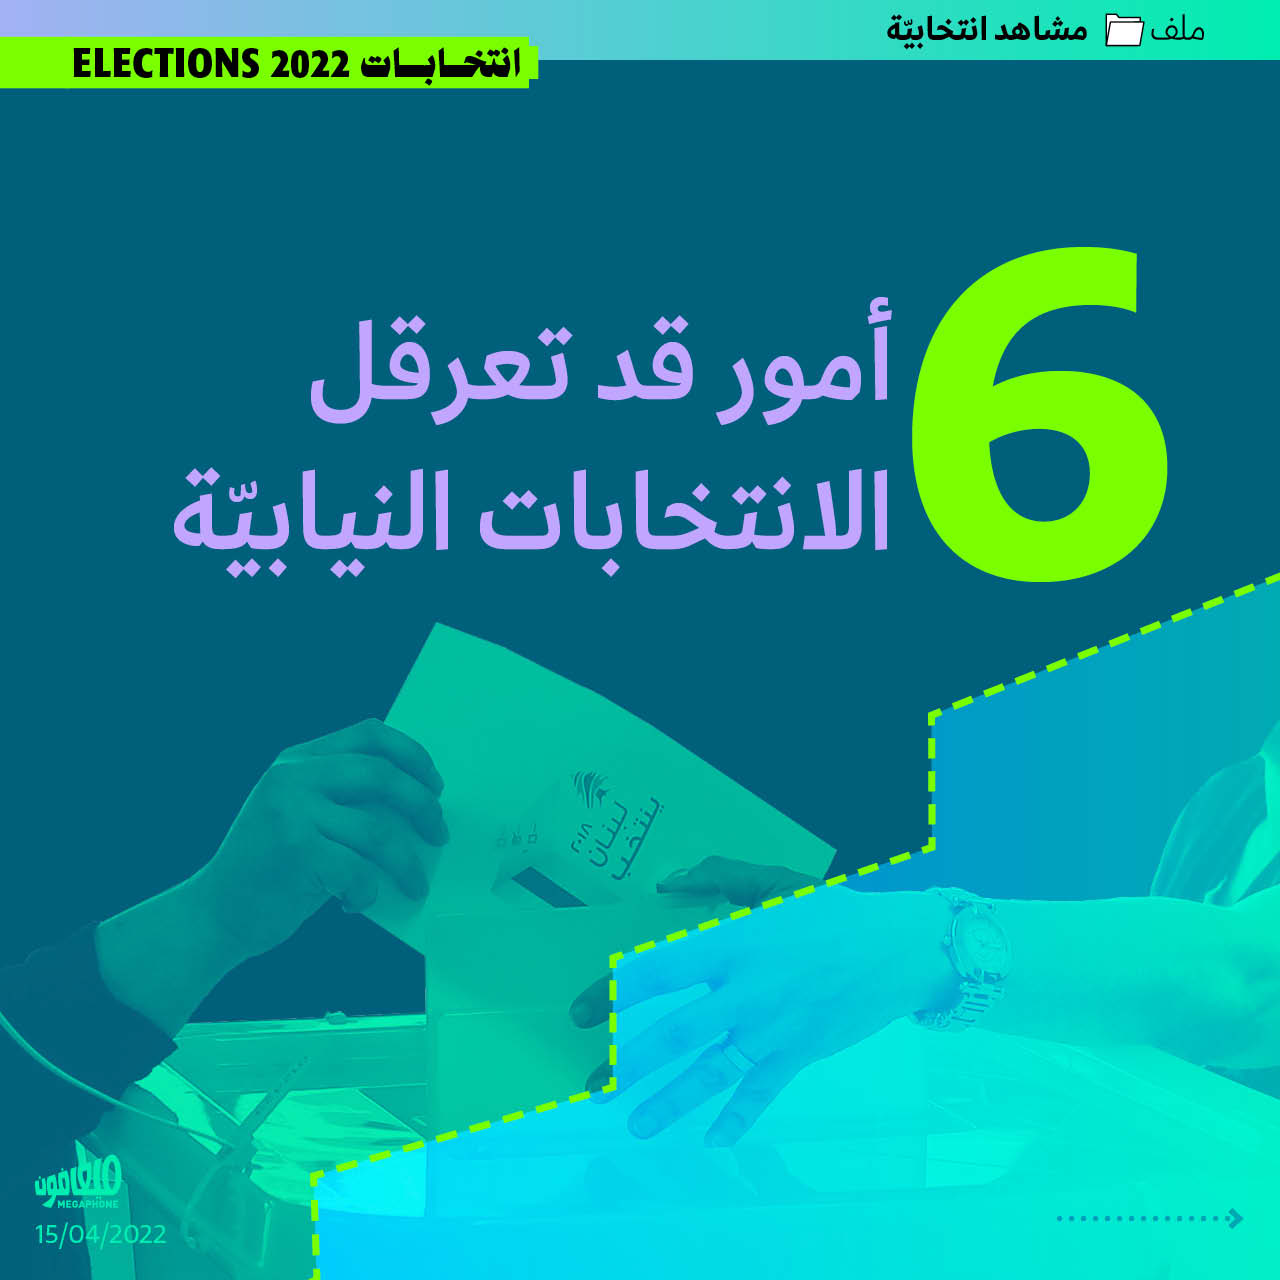 6 أمور قد تعرقل الانتخابات النيابيّة